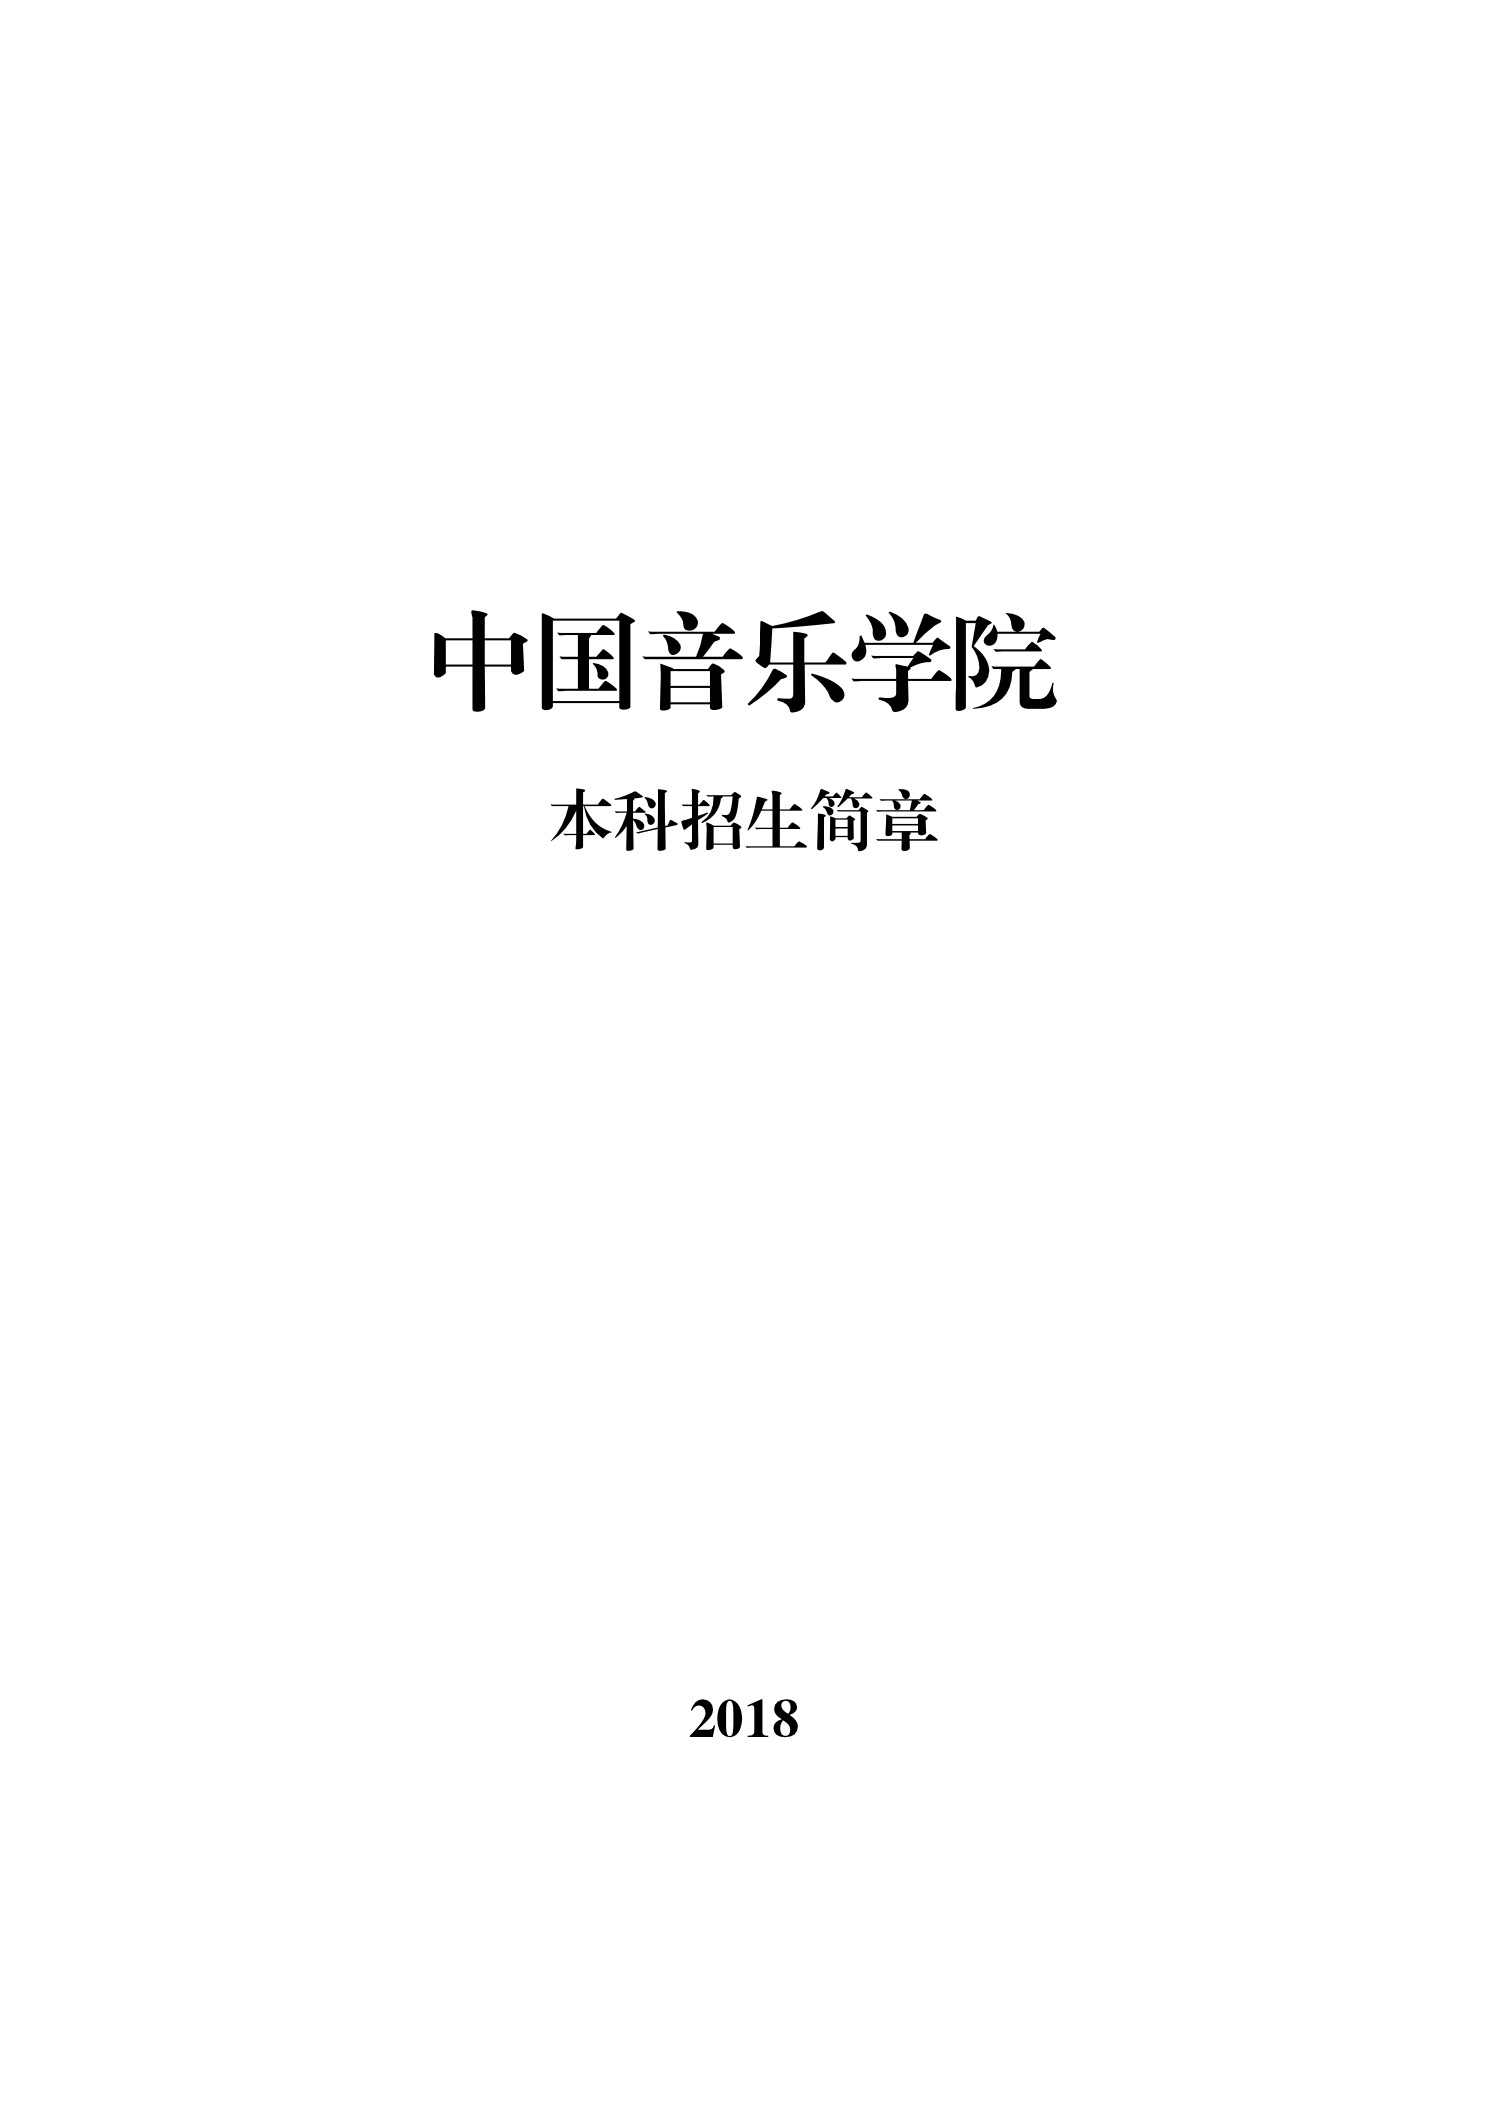 中国音乐学院本科招生简章（2018年）-page1.jpeg